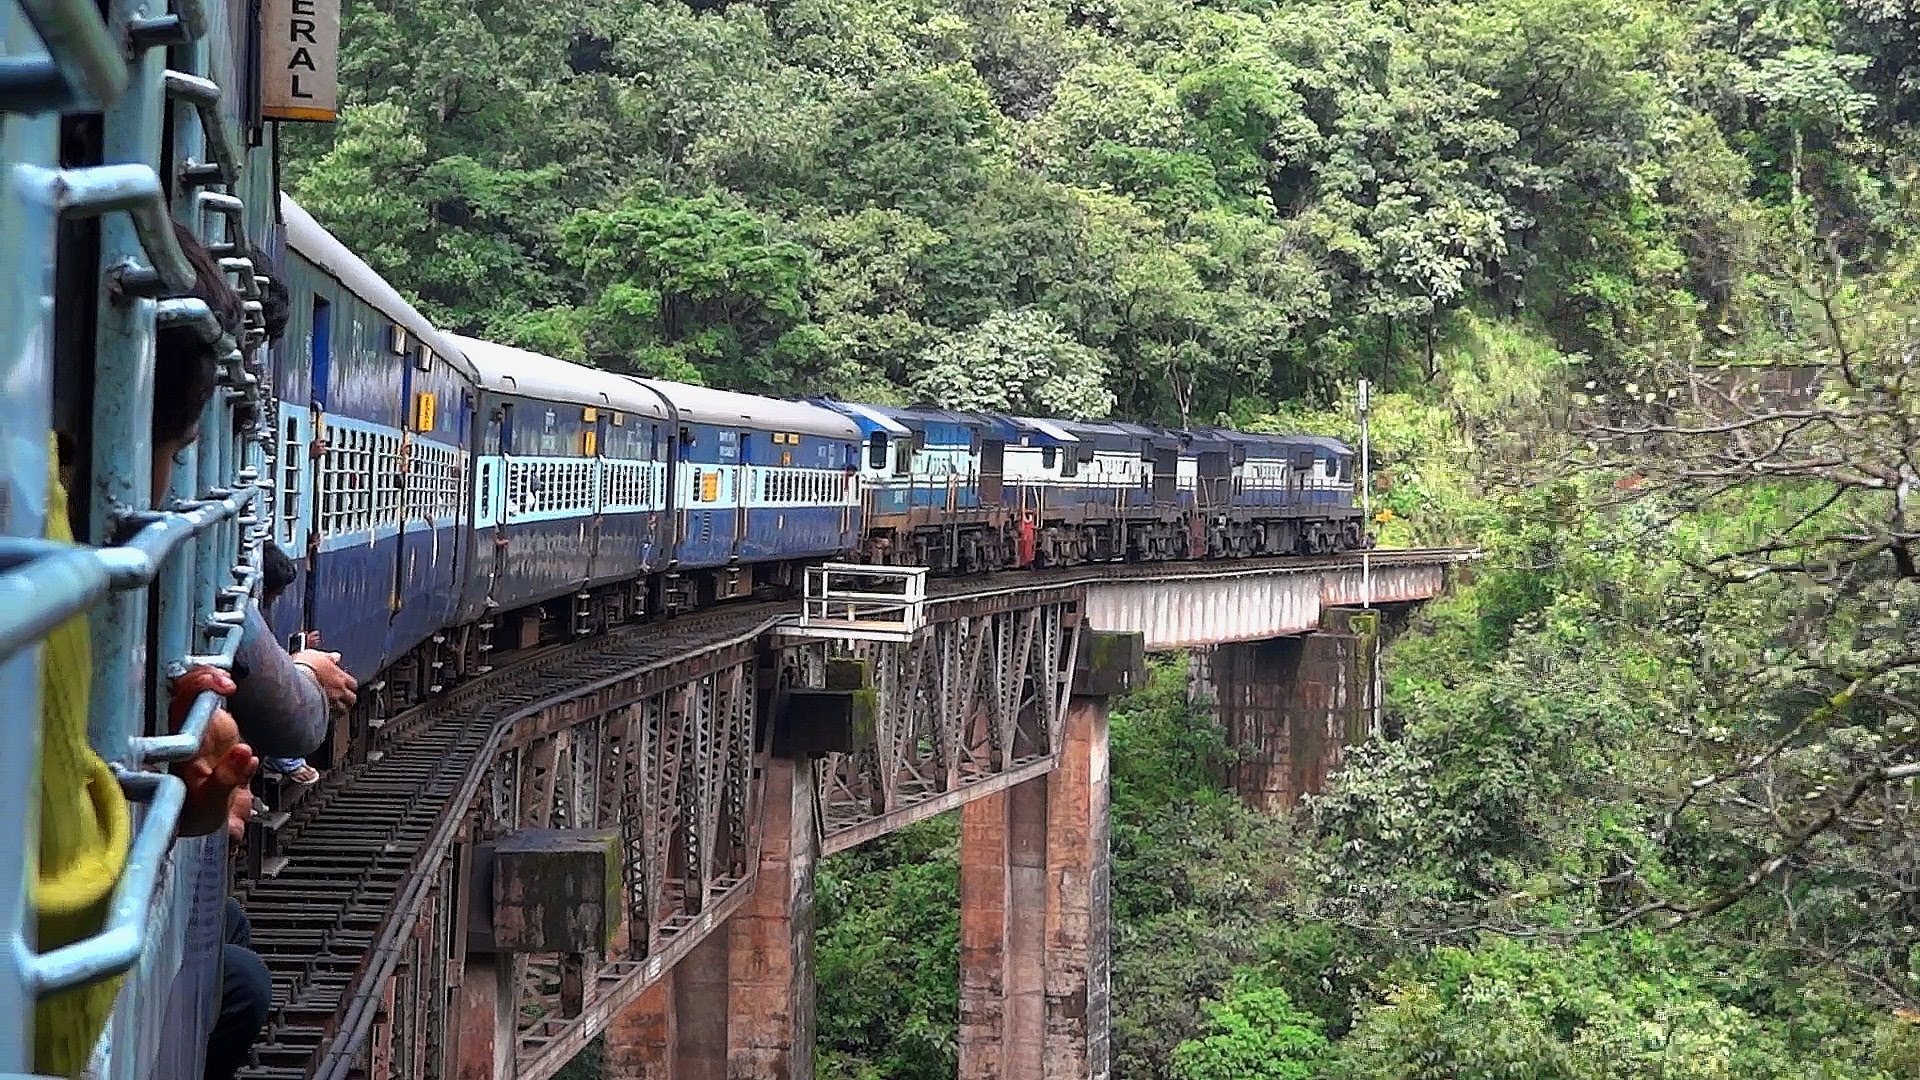 DANGEROUS TRAIN JOURNEY INDIAN RAILWAYS - YouTube